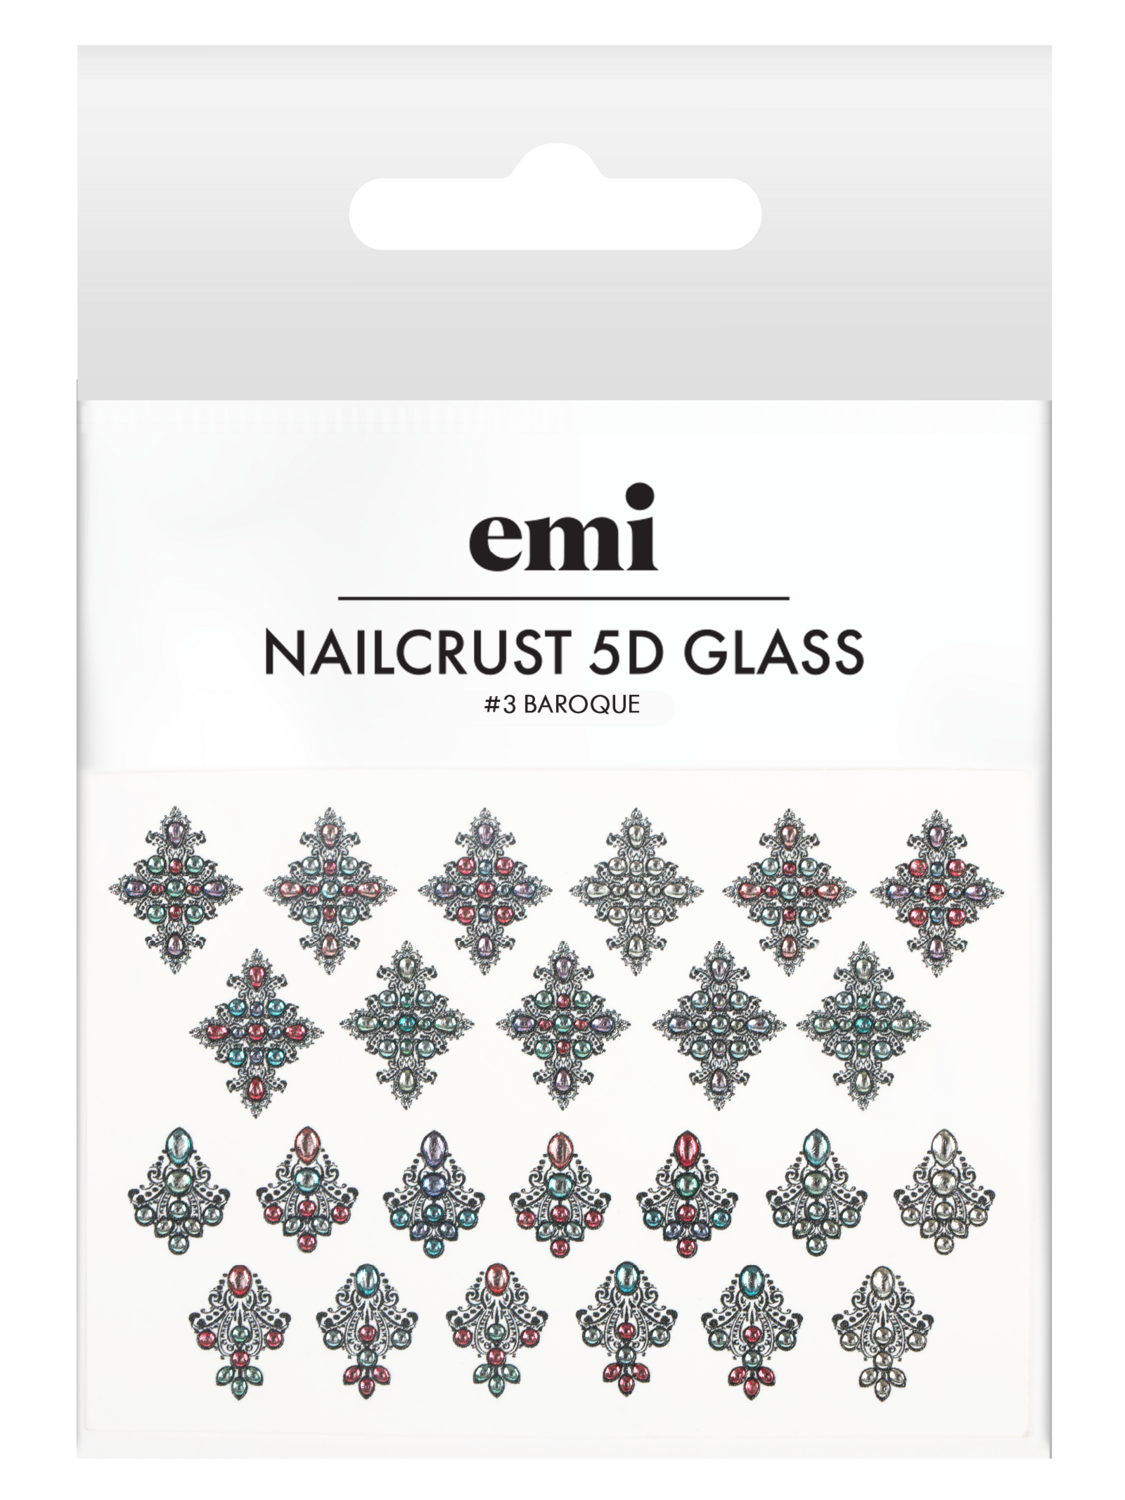 NAILCRUST 5D GLASS #3 Baroque